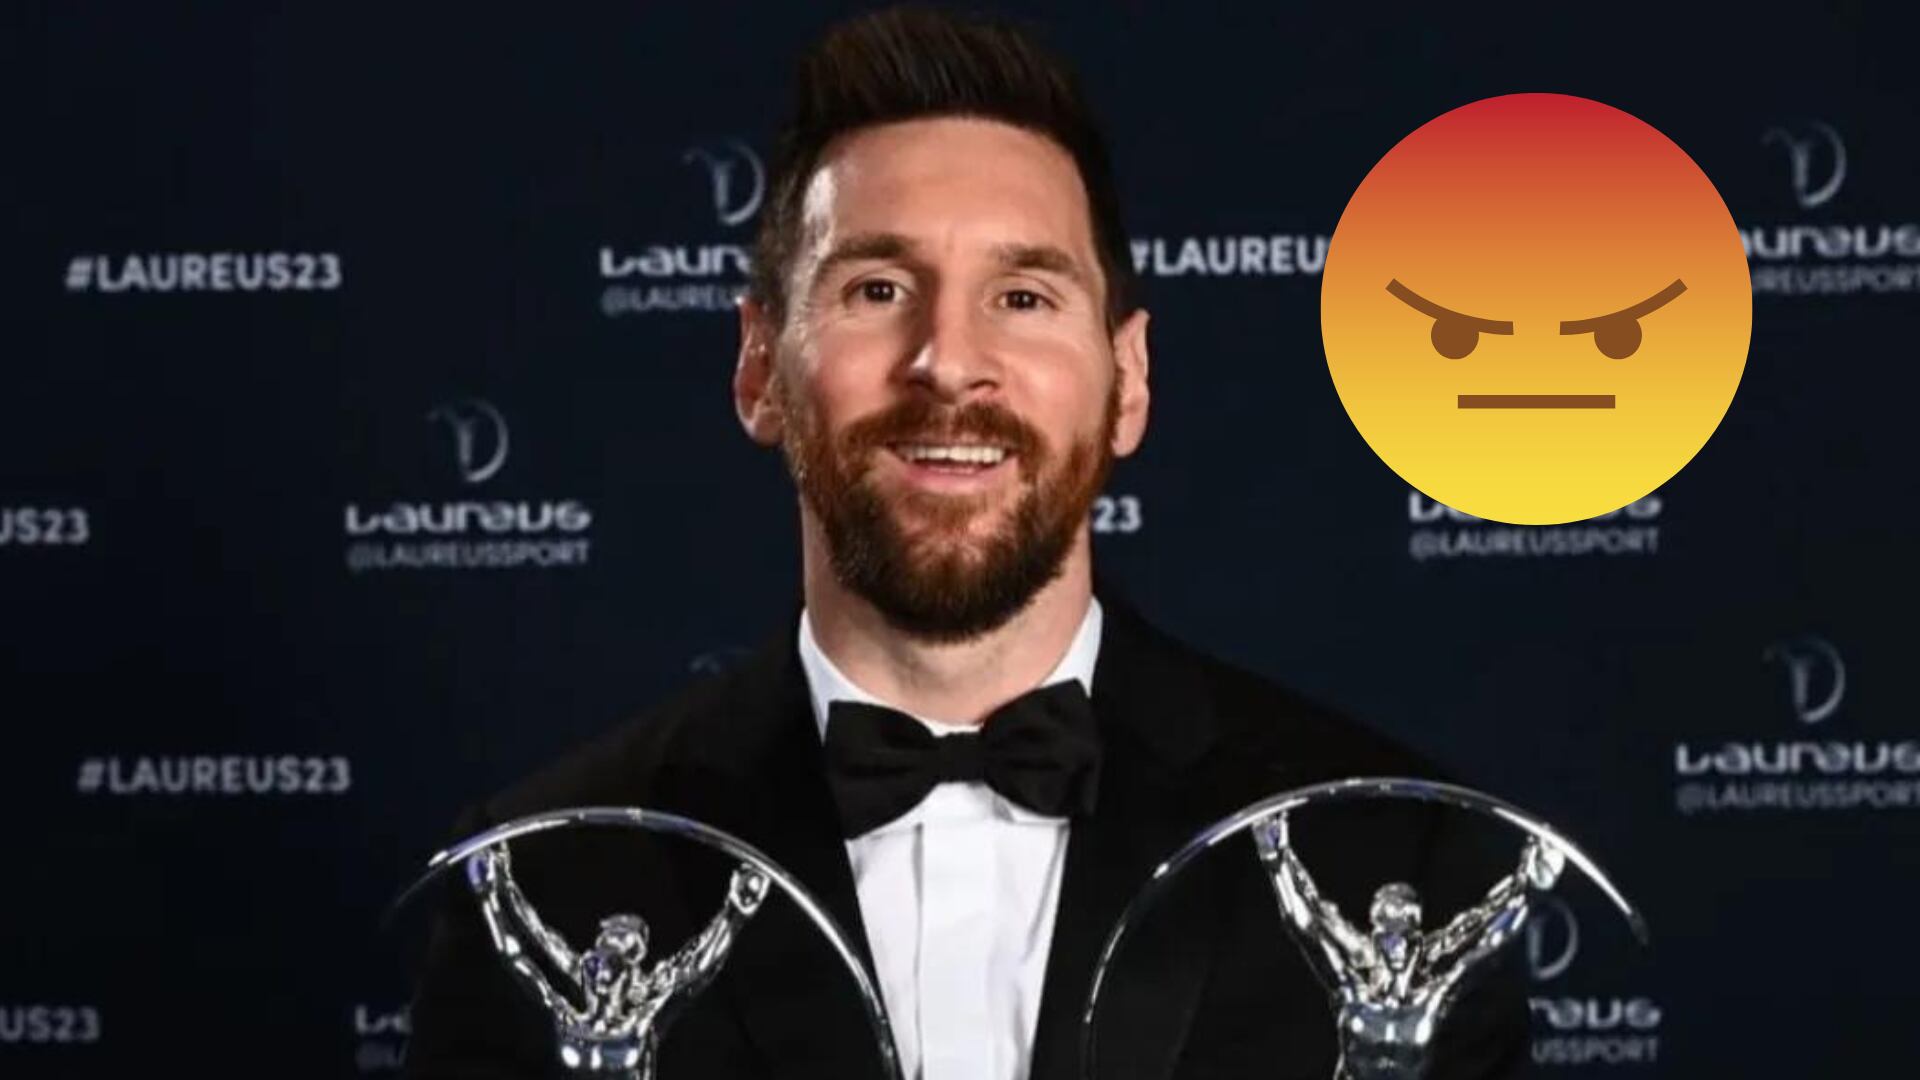 ¿Otro premio más? Messi y una nueva nominación que podría enojar a los hinchas